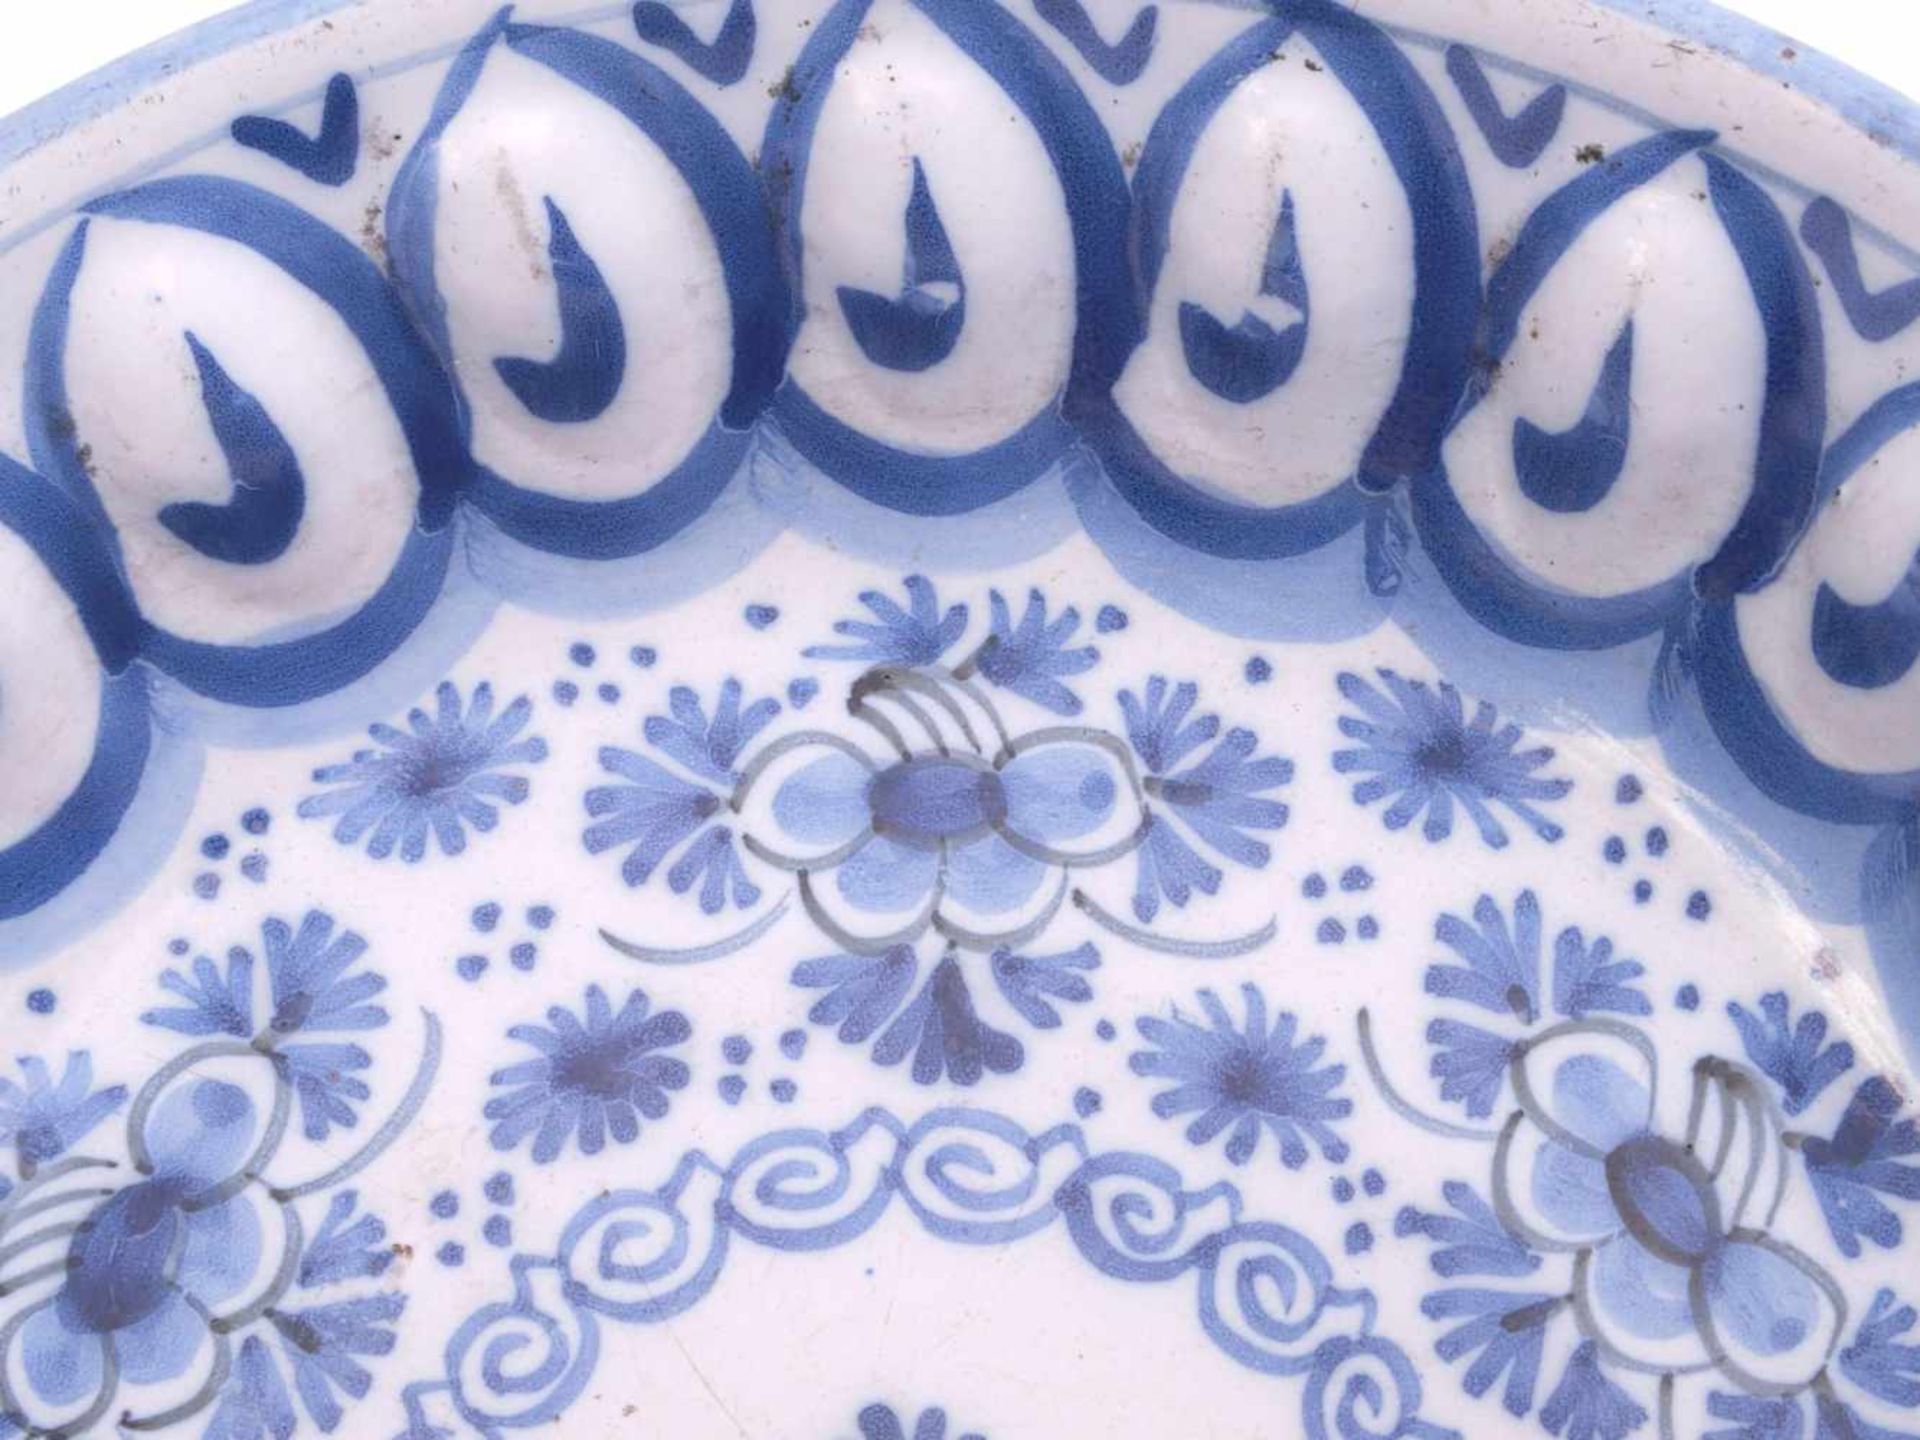 Fayence Buckelplatte 19. Jhd.Weiße Zinnglasur, schwarz akzentuierte Blaumalerei in floralen Motiven. - Bild 3 aus 6